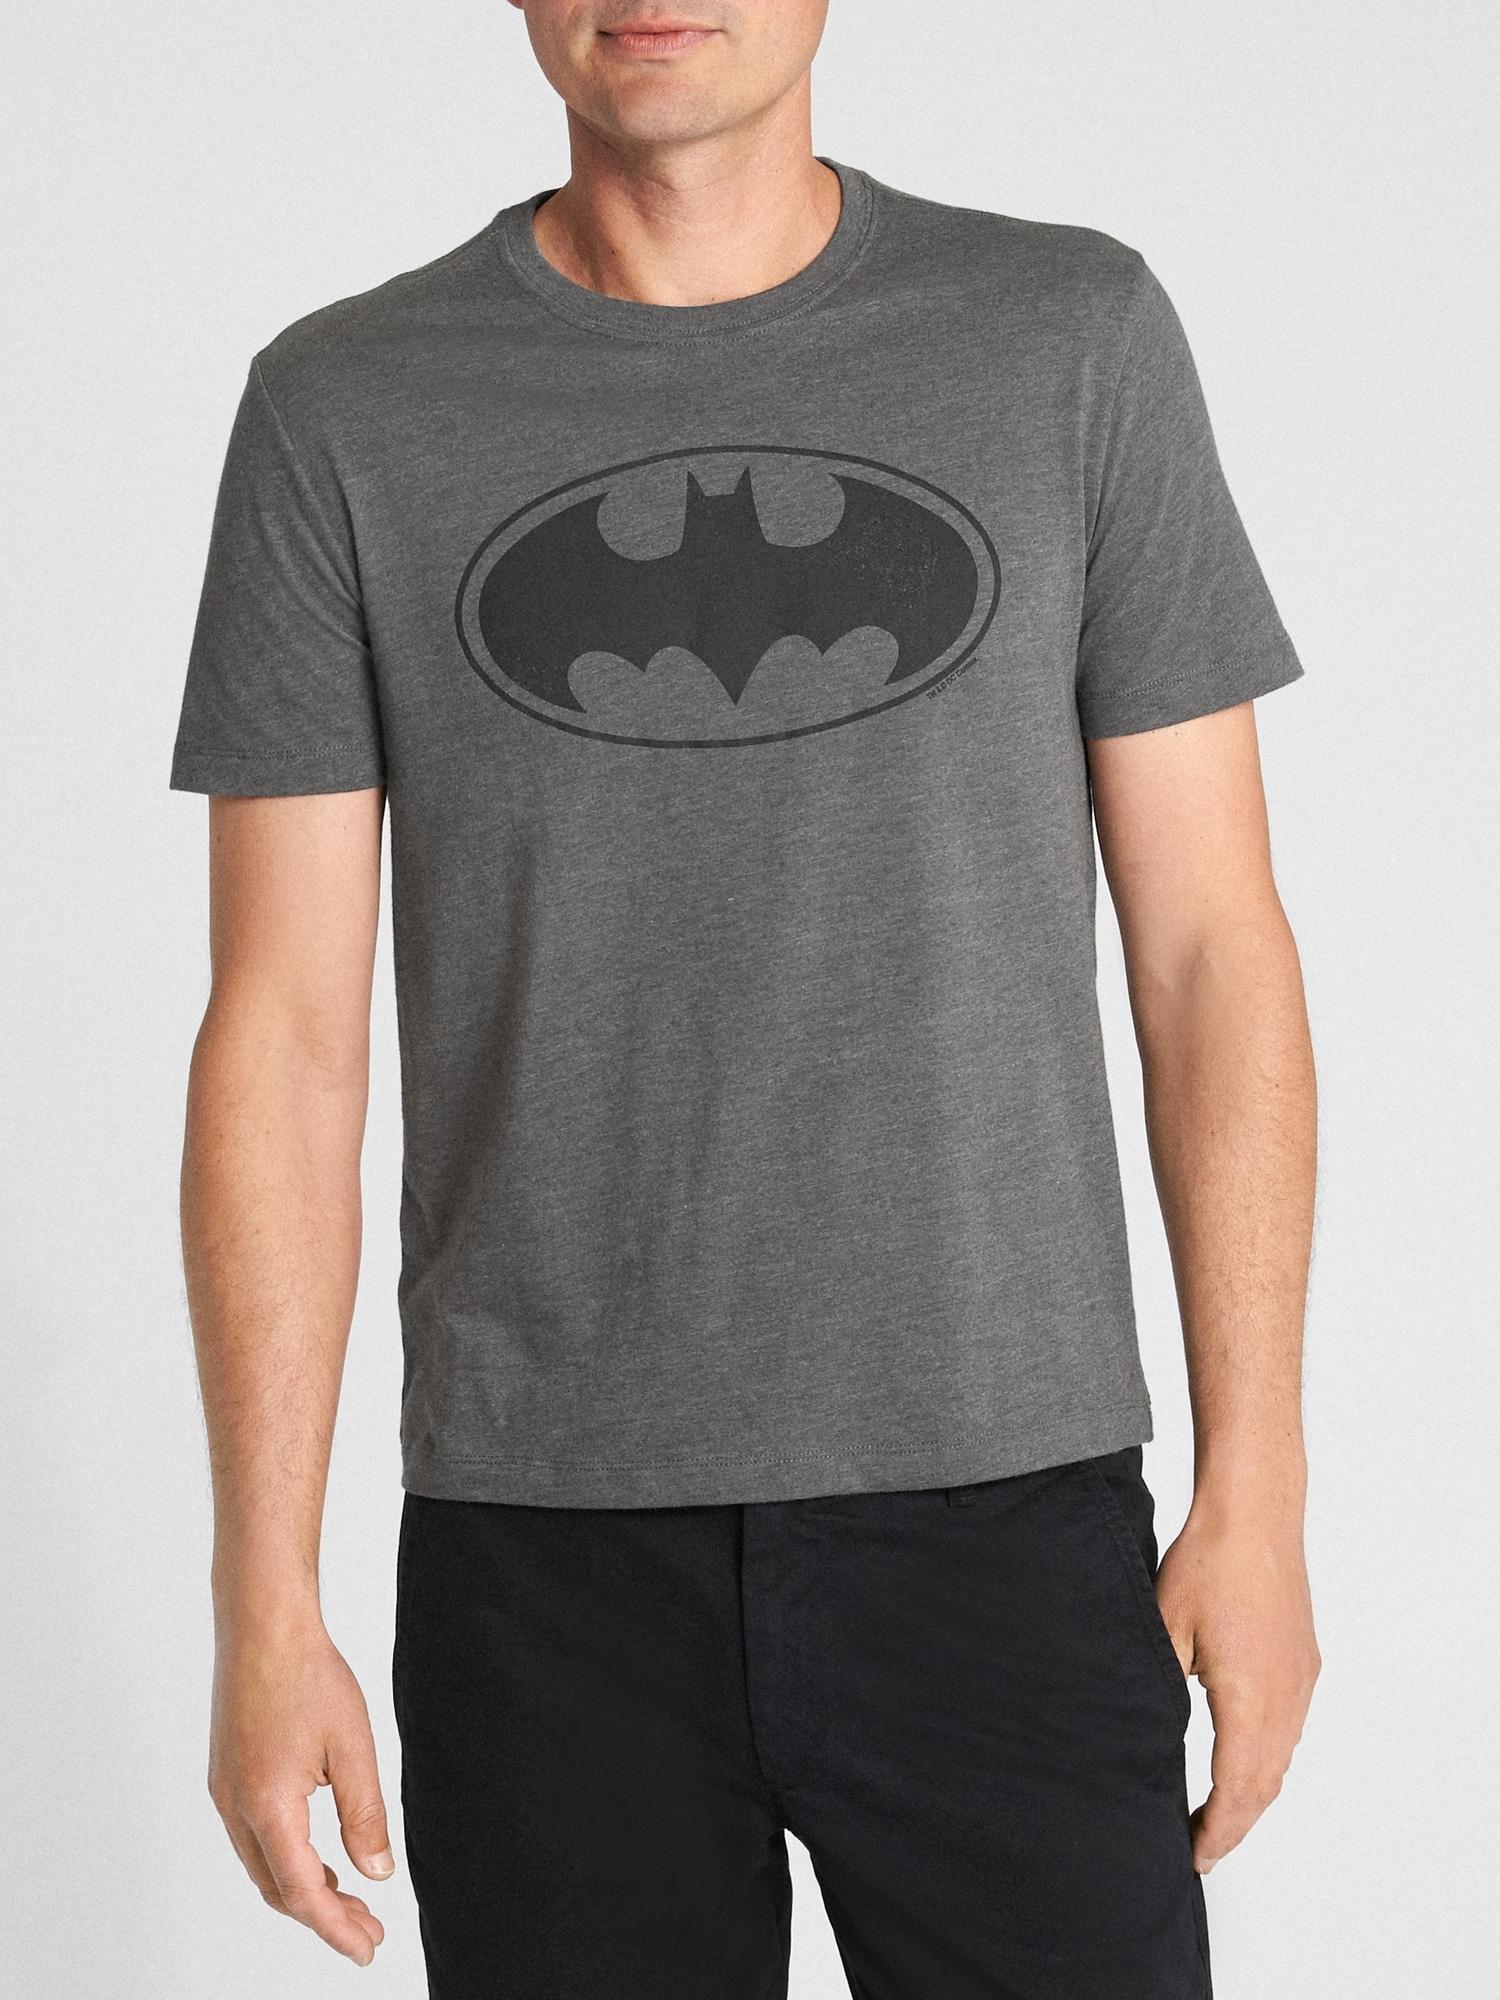 gap batman shirt